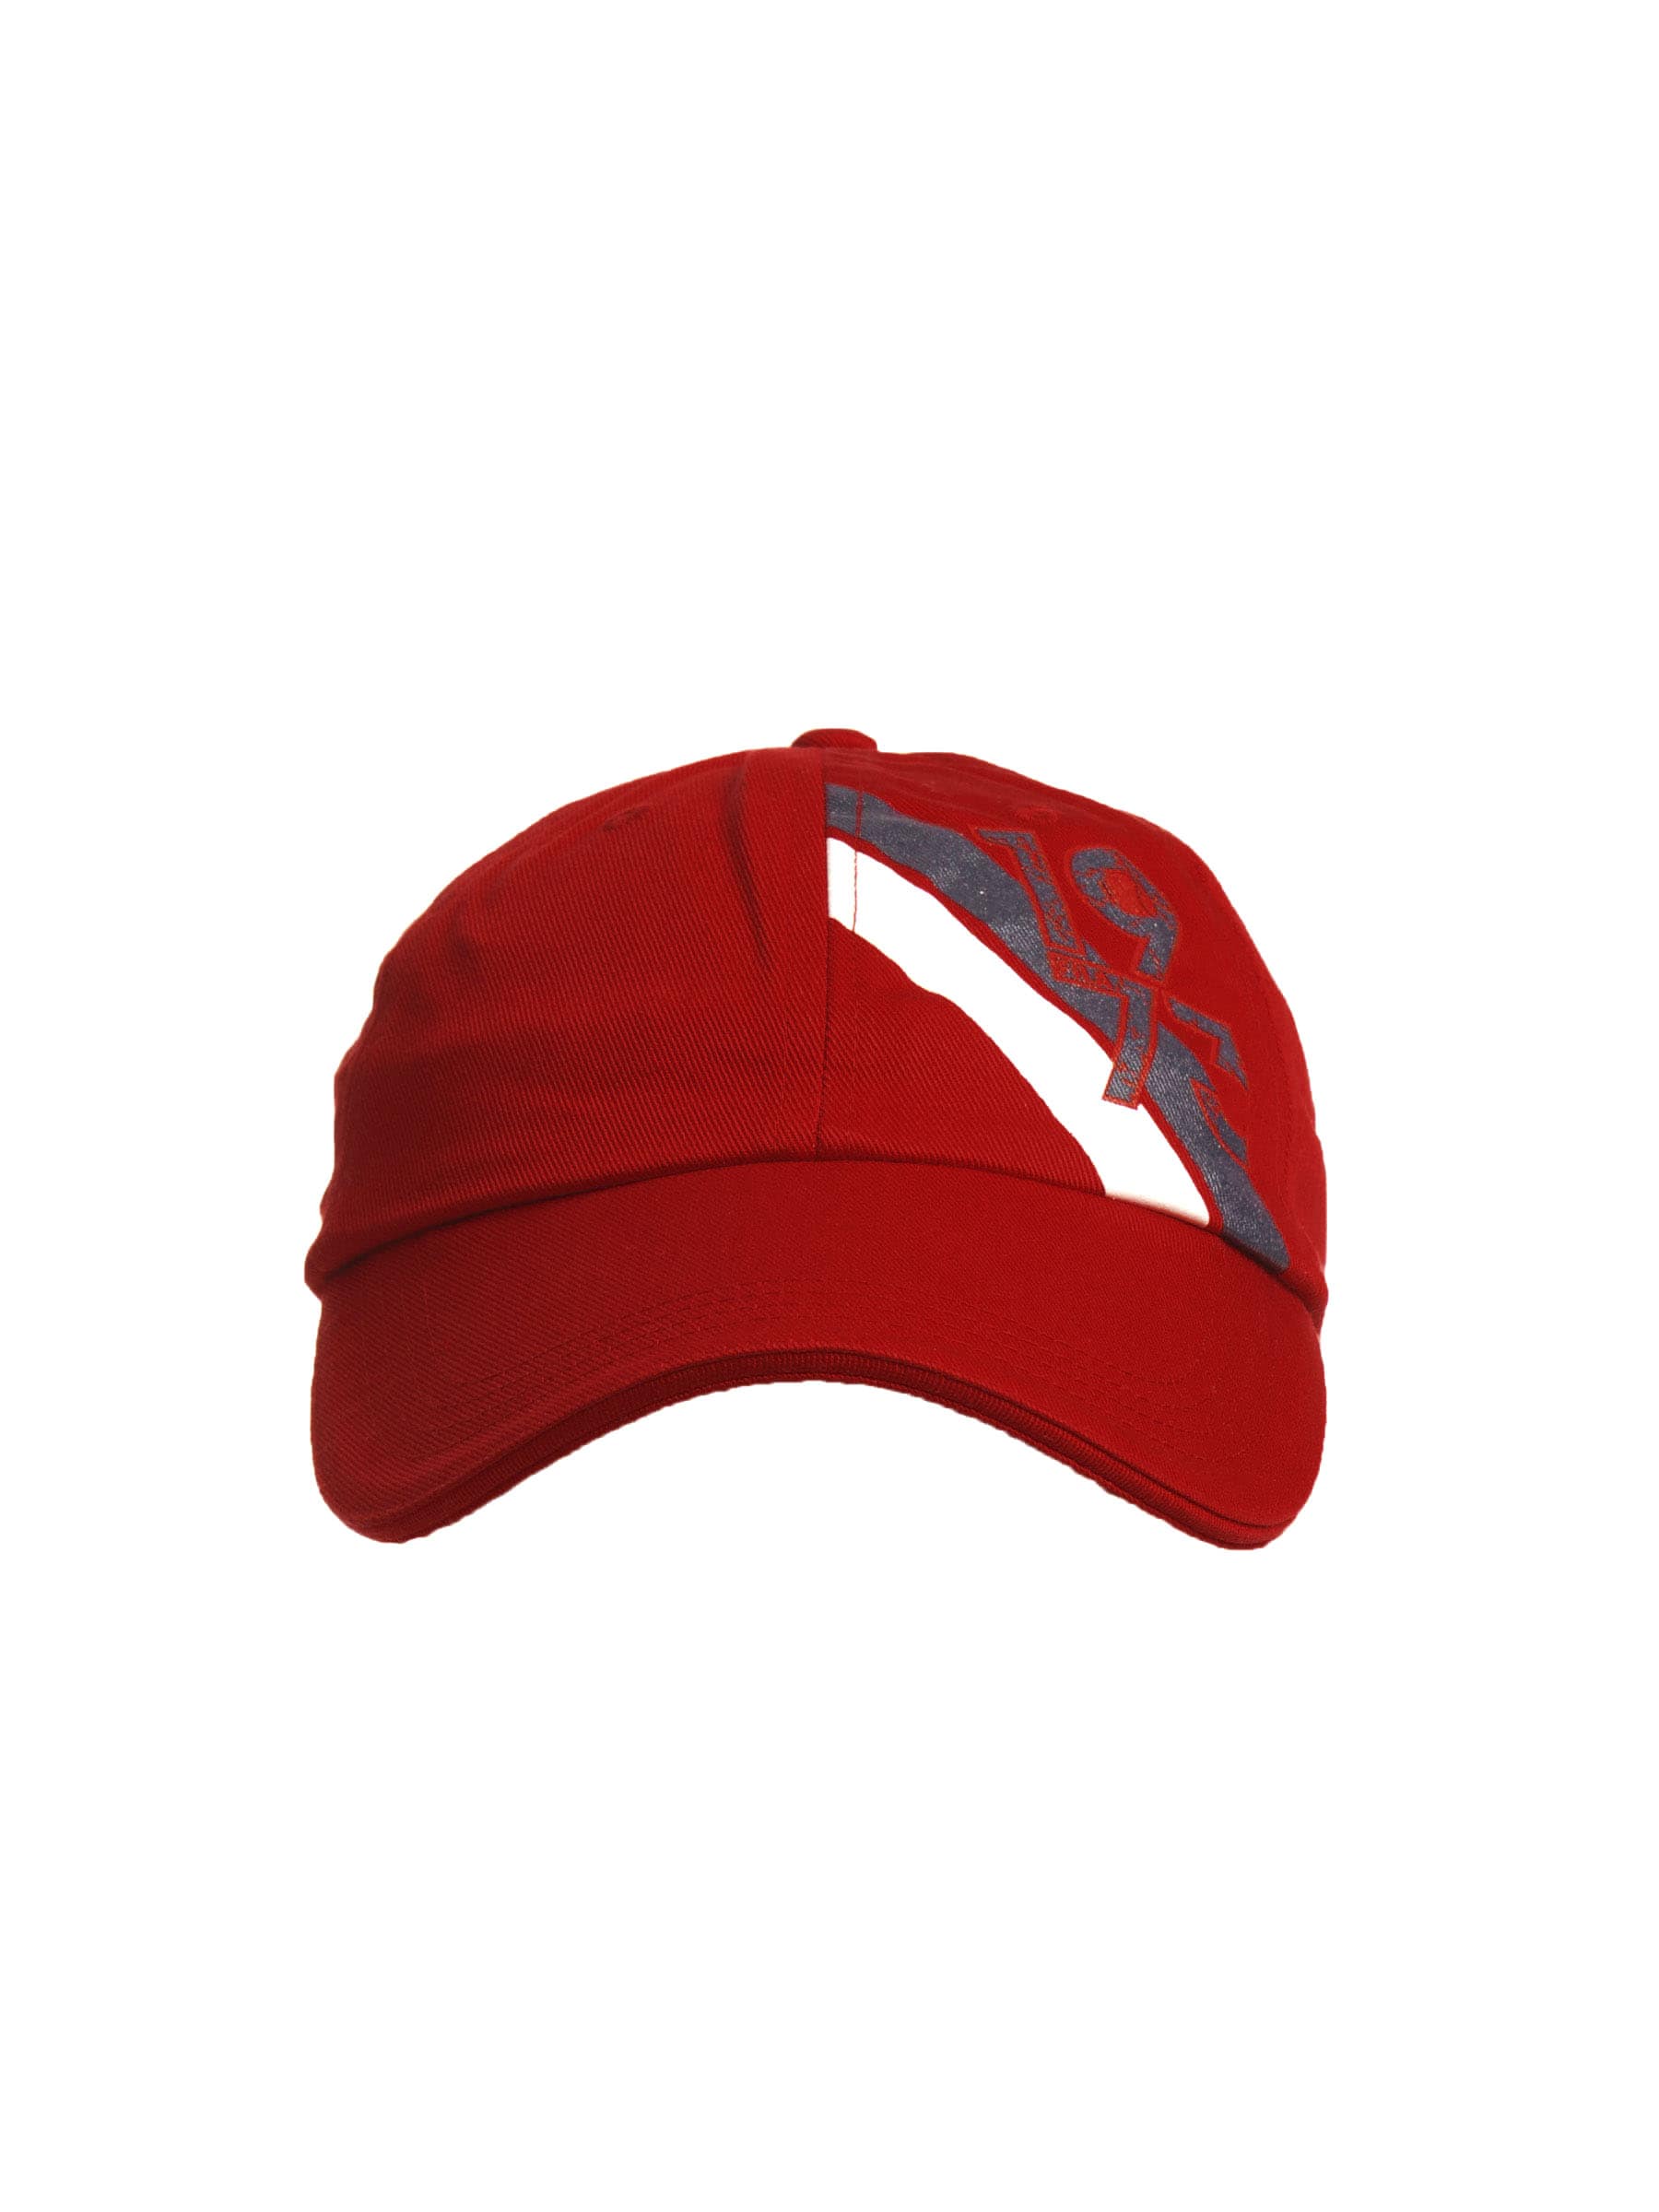 Fila Unisex Printed Red Caps